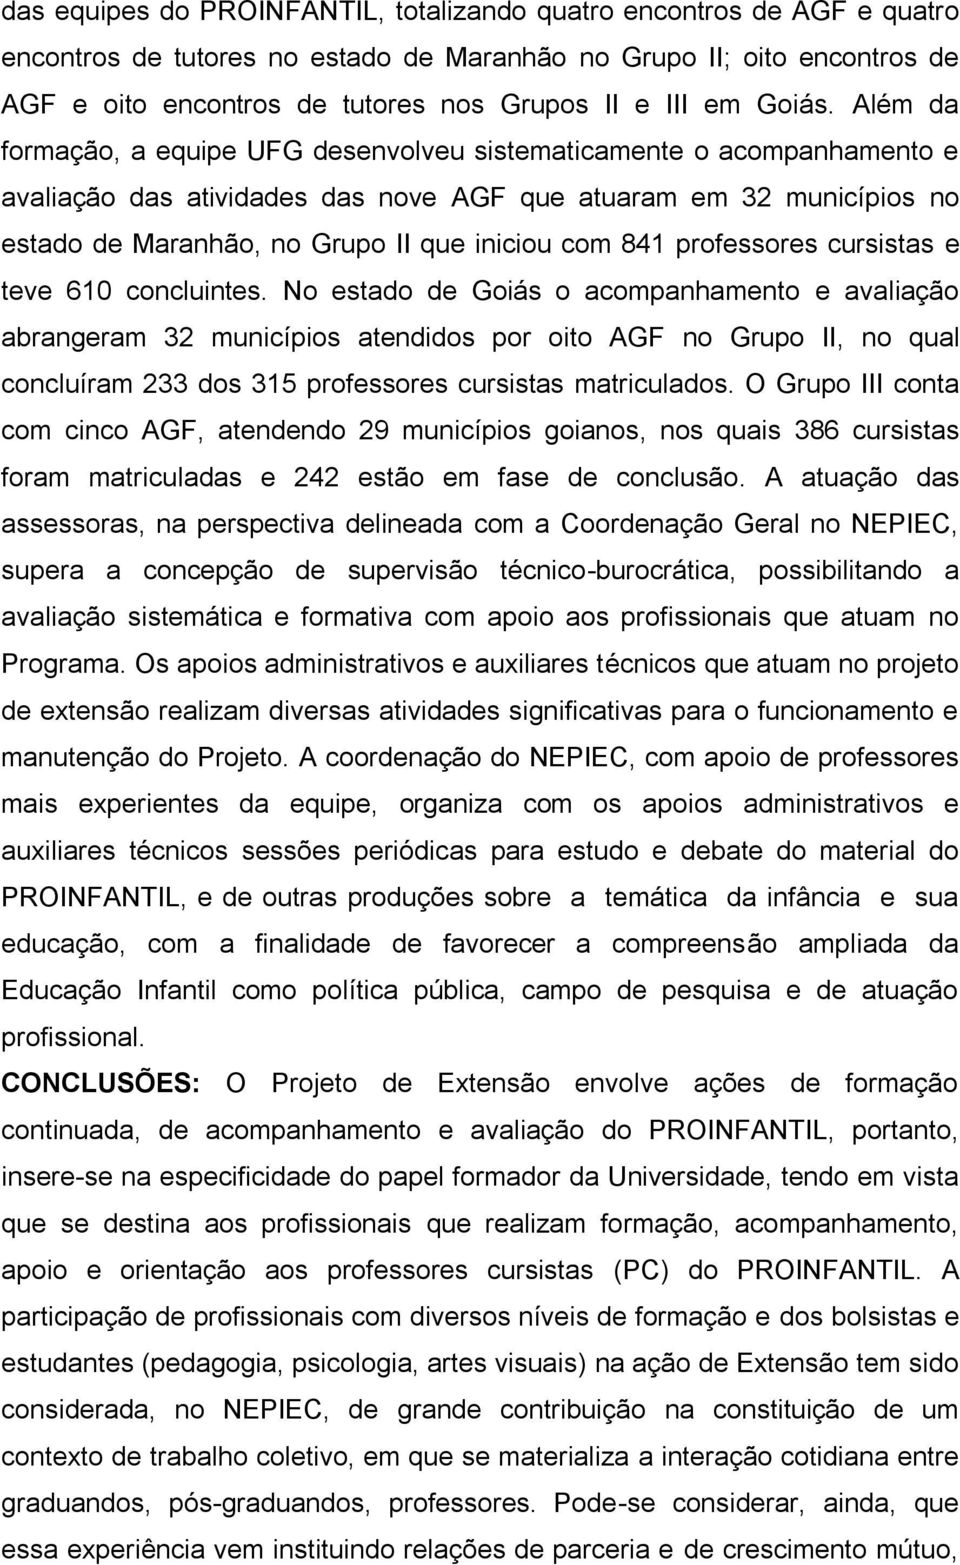 Além da formação, a equipe UFG desenvolveu sistematicamente o acompanhamento e avaliação das atividades das nove AGF que atuaram em 32 municípios no estado de Maranhão, no Grupo II que iniciou com